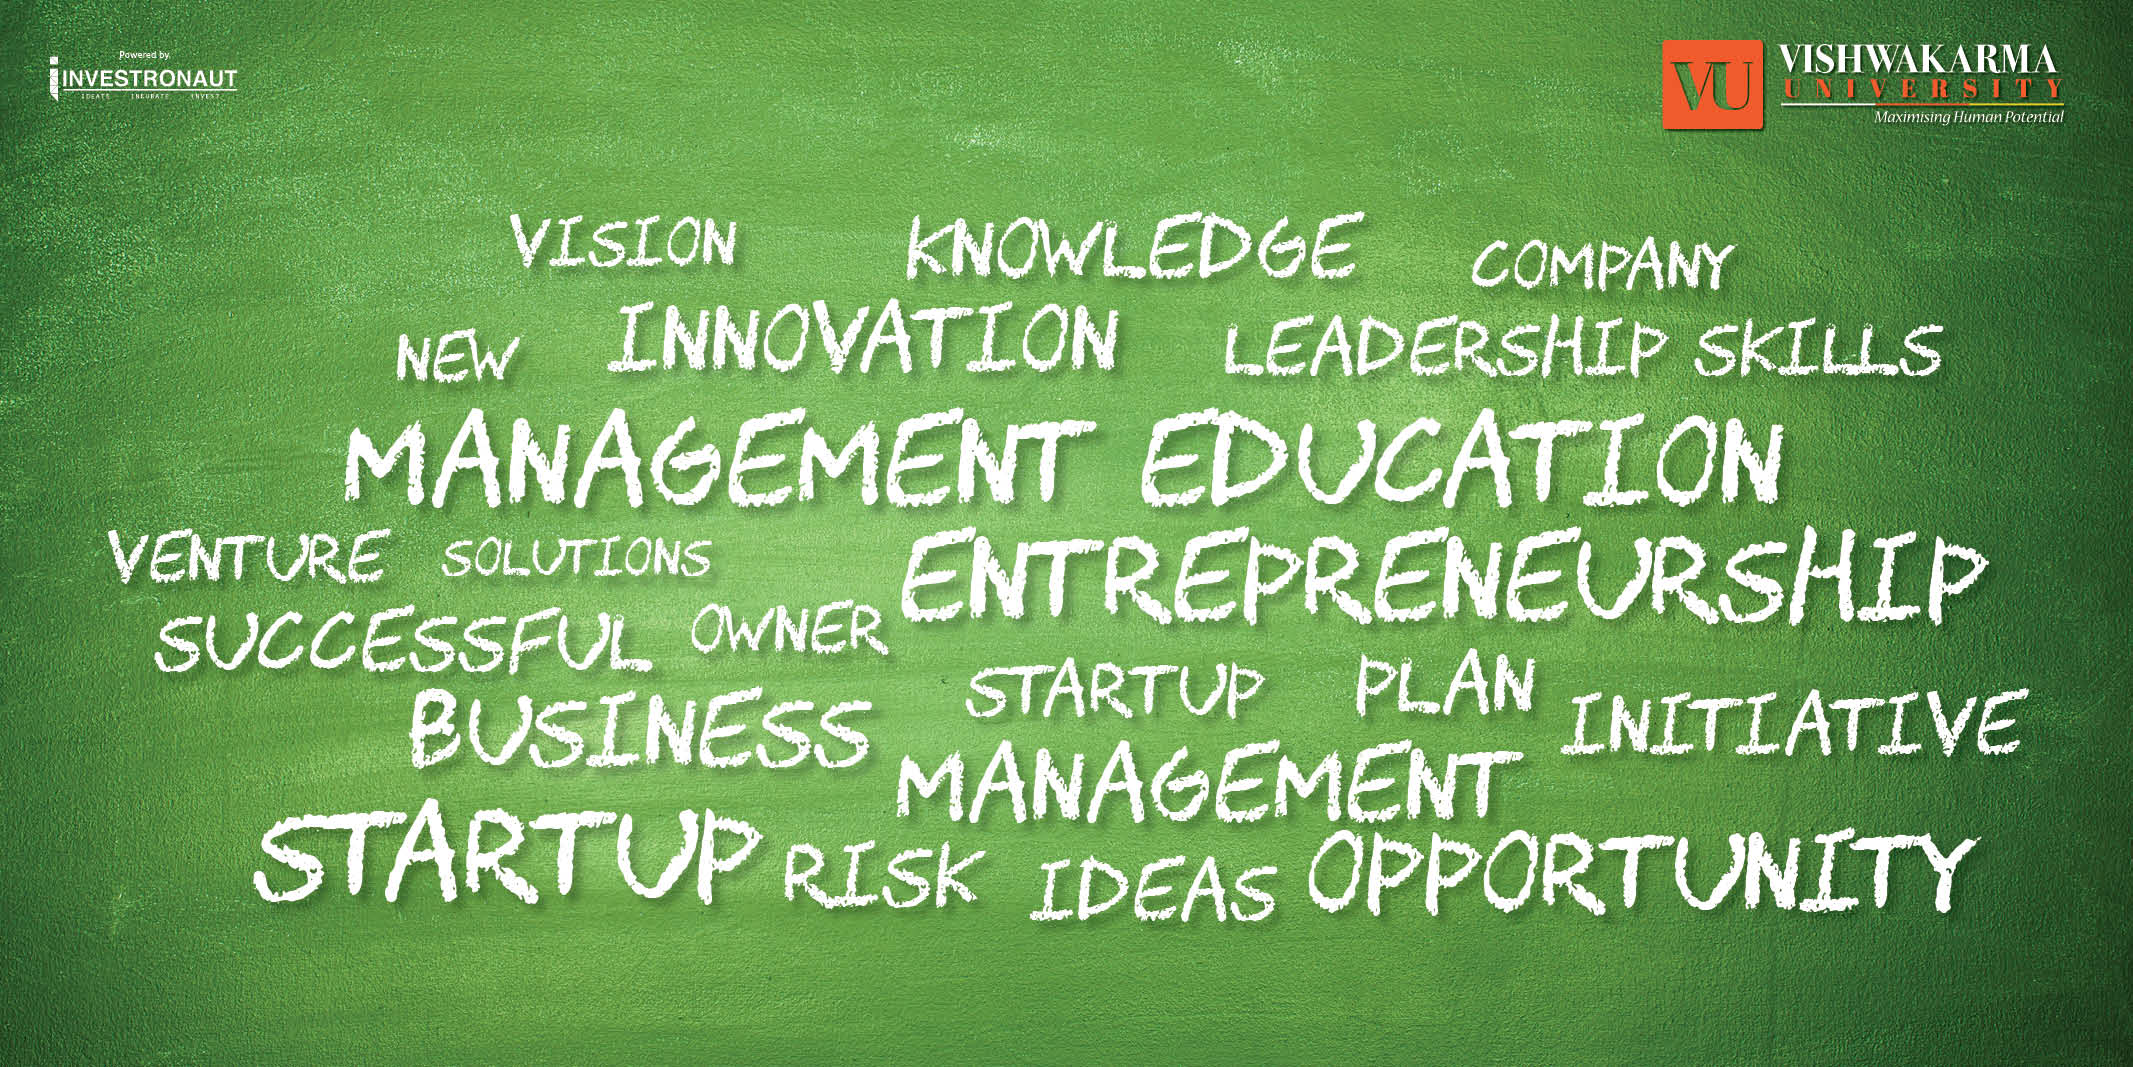 Linkedlin Post For Management Education Entrepreneurship 1